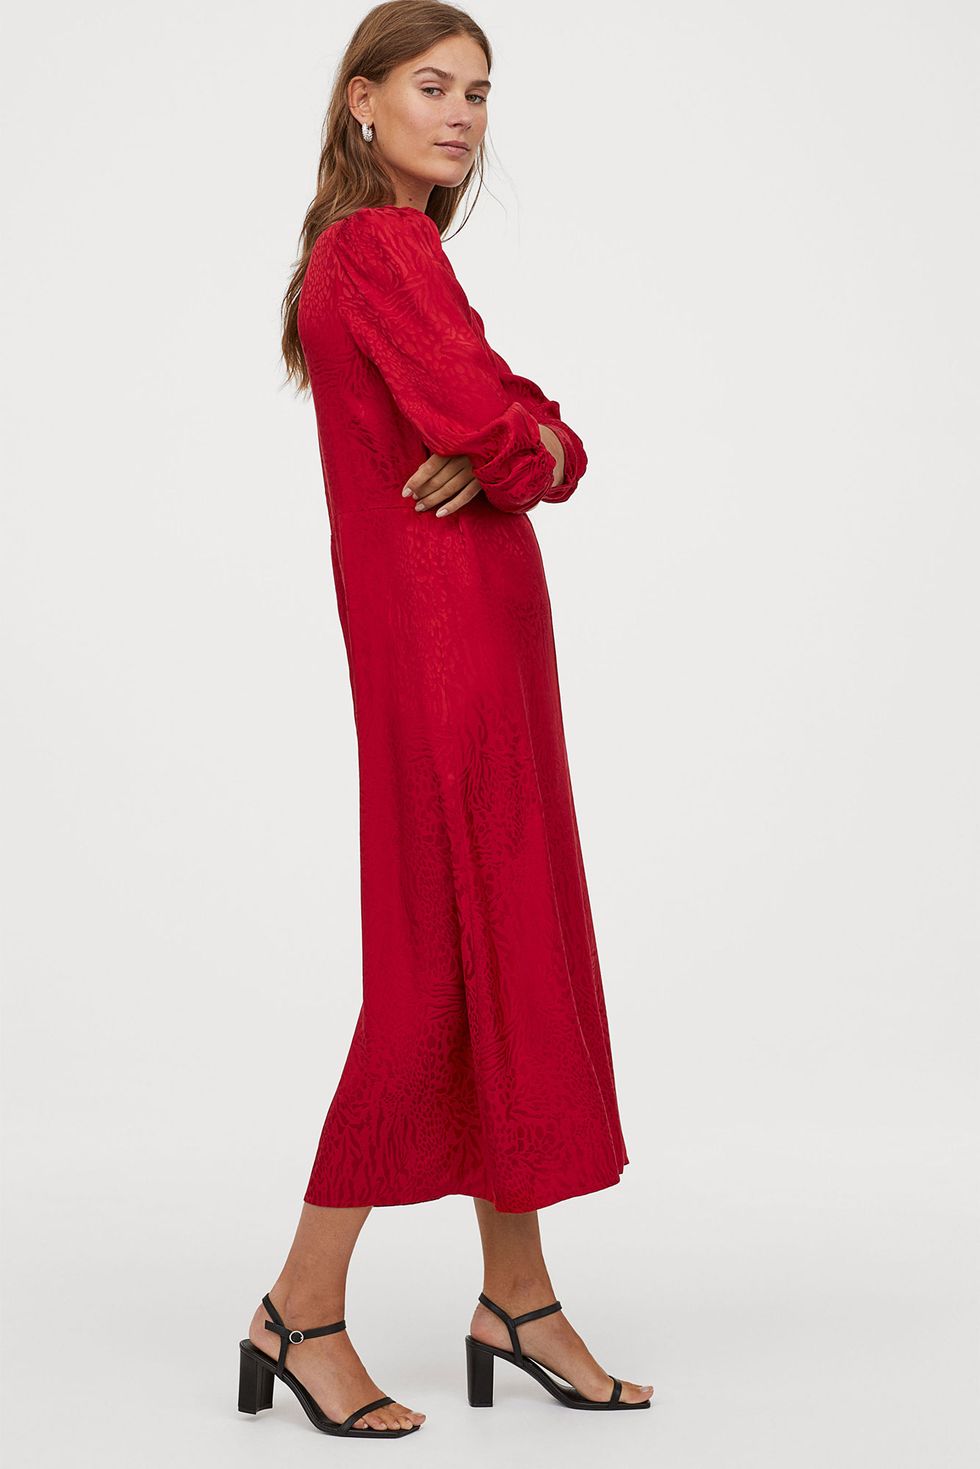 Respecto a teatro buffet Este vestido rojo drapeado de manga larga de H&M es lo mejor